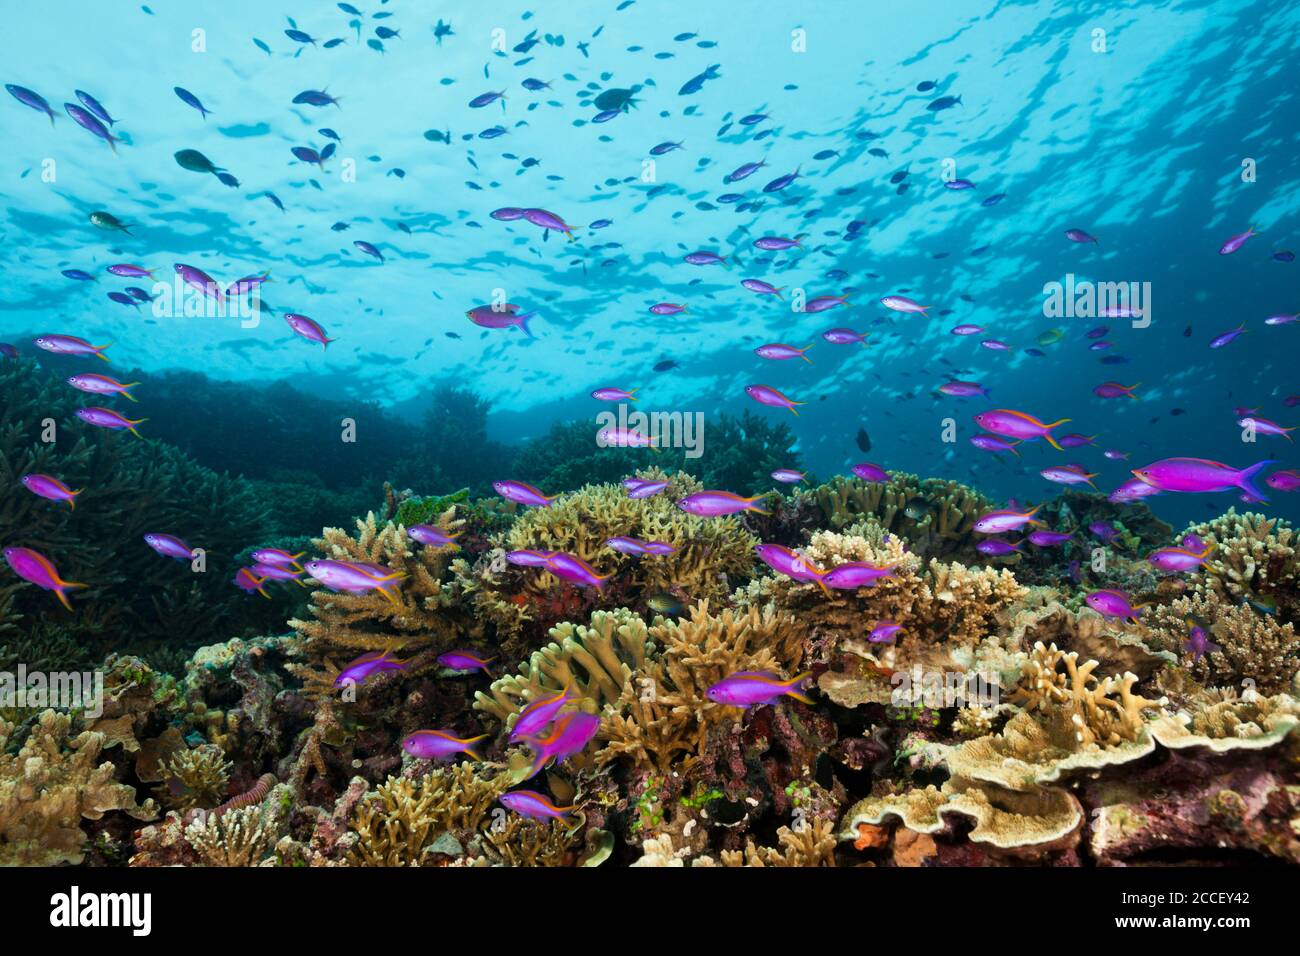 Pacific Anthias over Coral Reef, Pseudanthias cheirospilos, Kimbe Bay, New Britain, Papua New Guinea Stock Photo